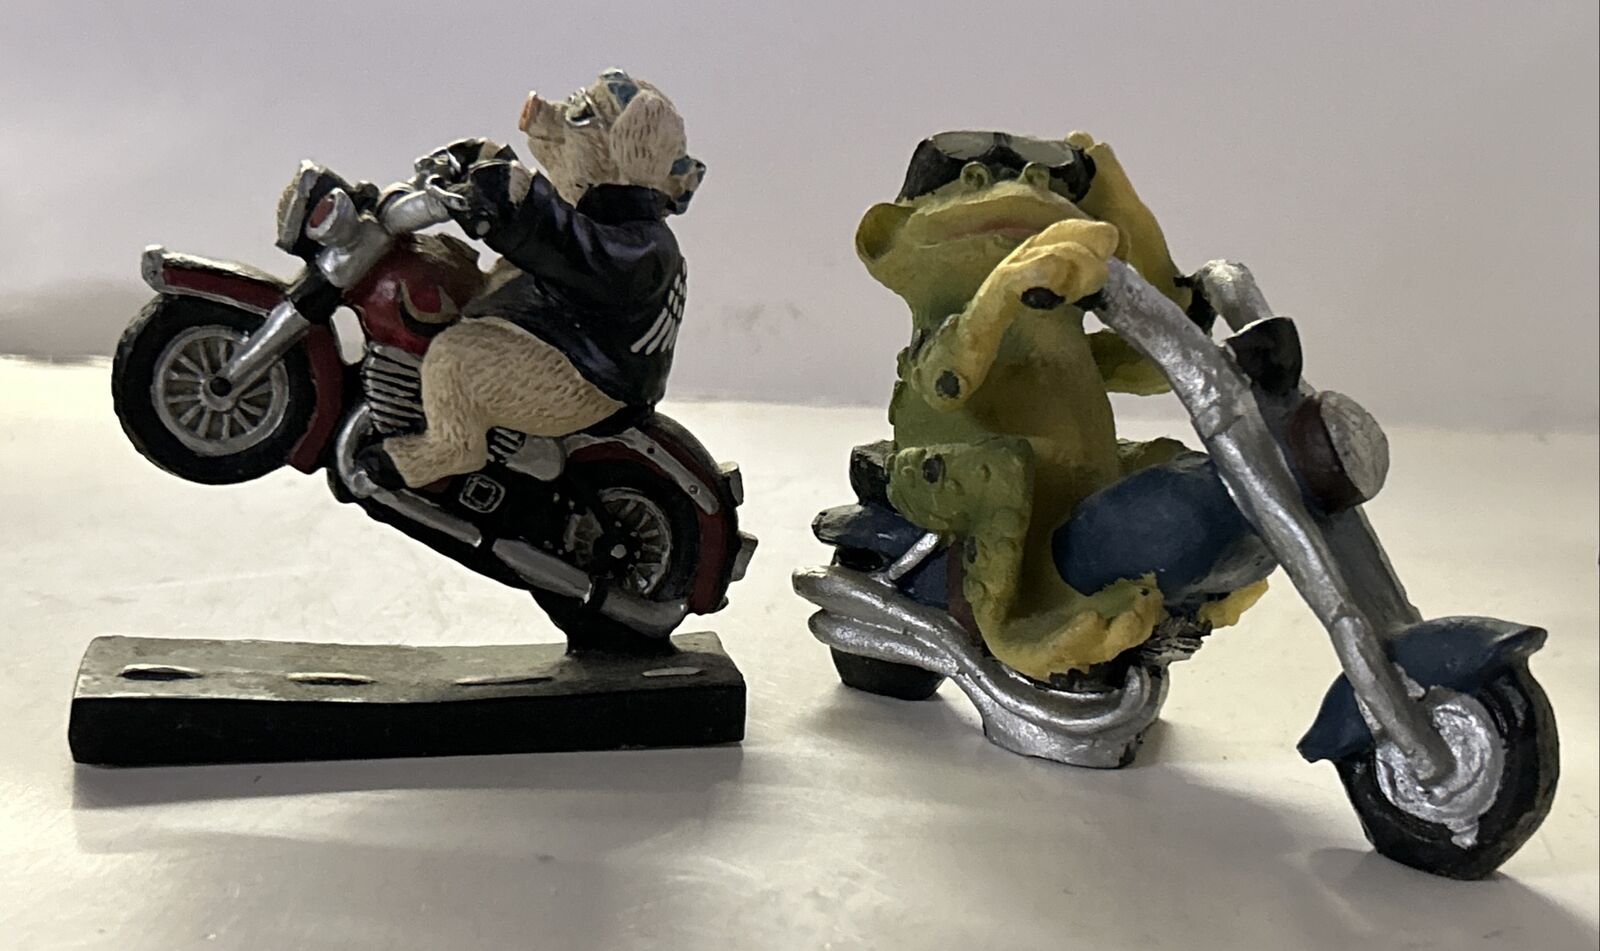 Pair Of Frog & Hog On Motorcycle Figurines Resin 3-1/4” To 4-1/2”